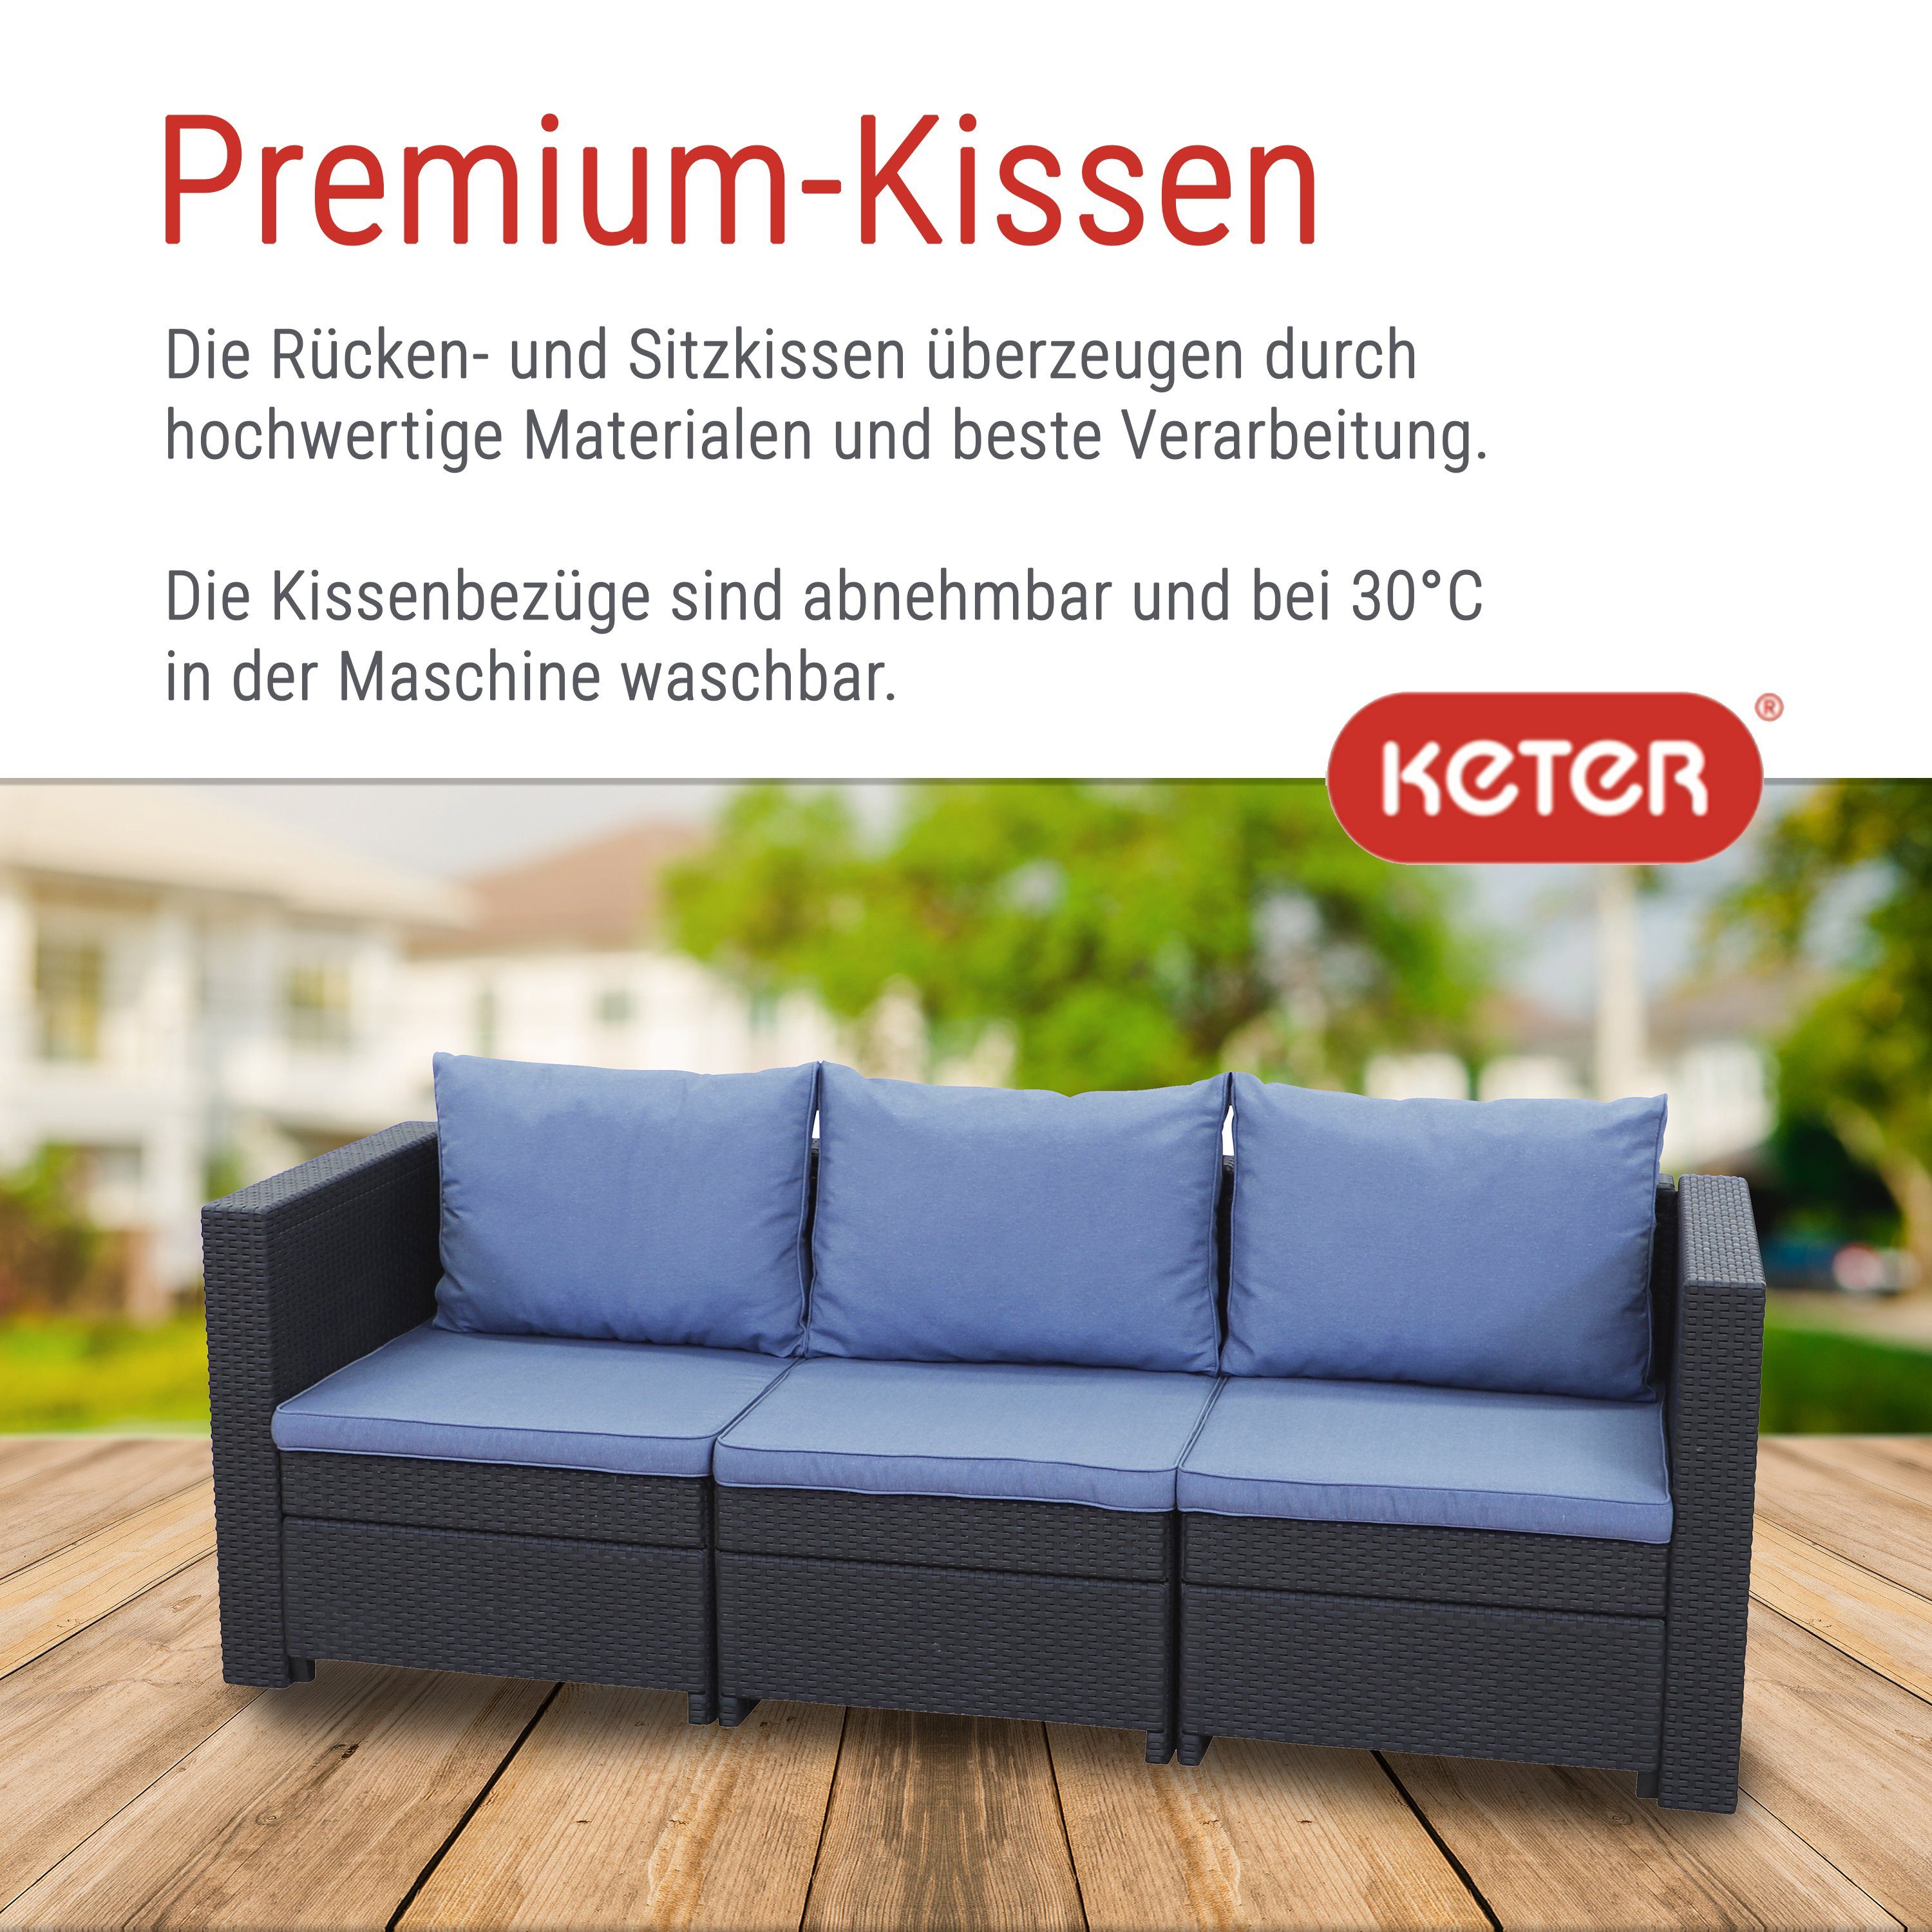 Keter Gartenlounge-Set Keter 3-Sitzer Gartensofa Panama Rauch-Blau Premium Provence anthrazit Kissen Kissenfarbe mit